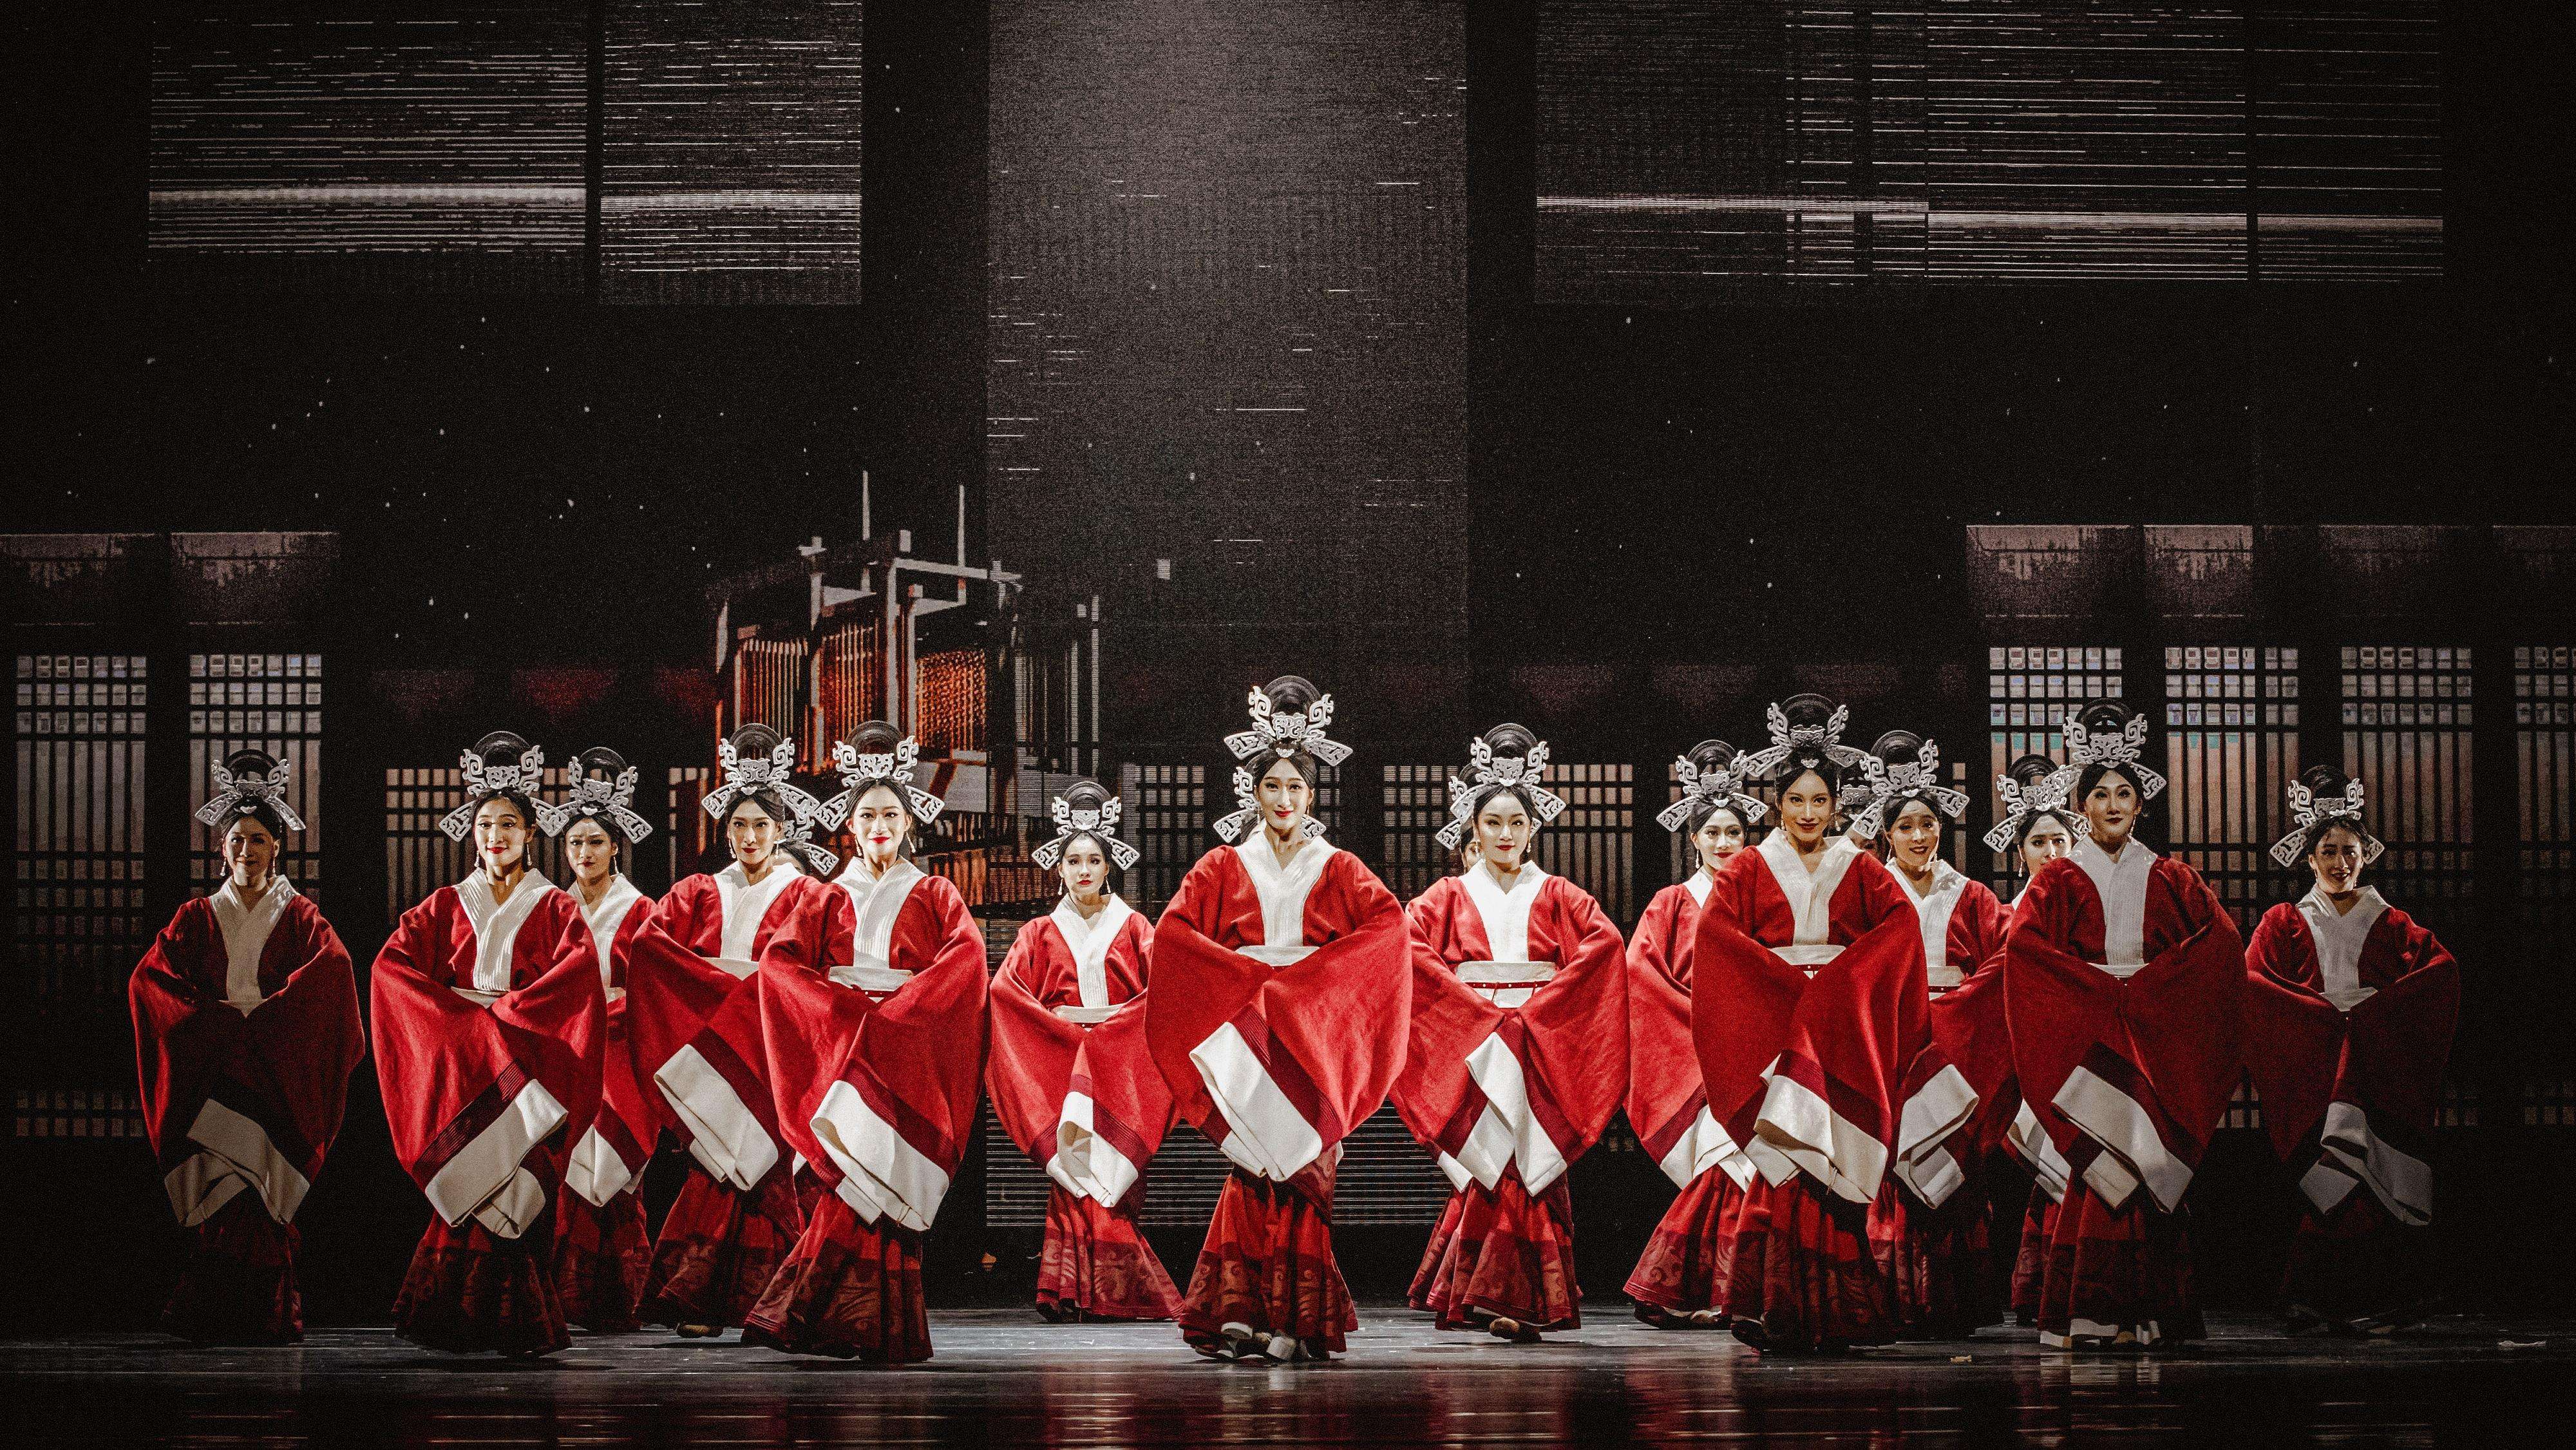 首屆中華文化節開幕節目《五星出東方》6月公演 得獎舞劇靈感源自千年織錦護臂